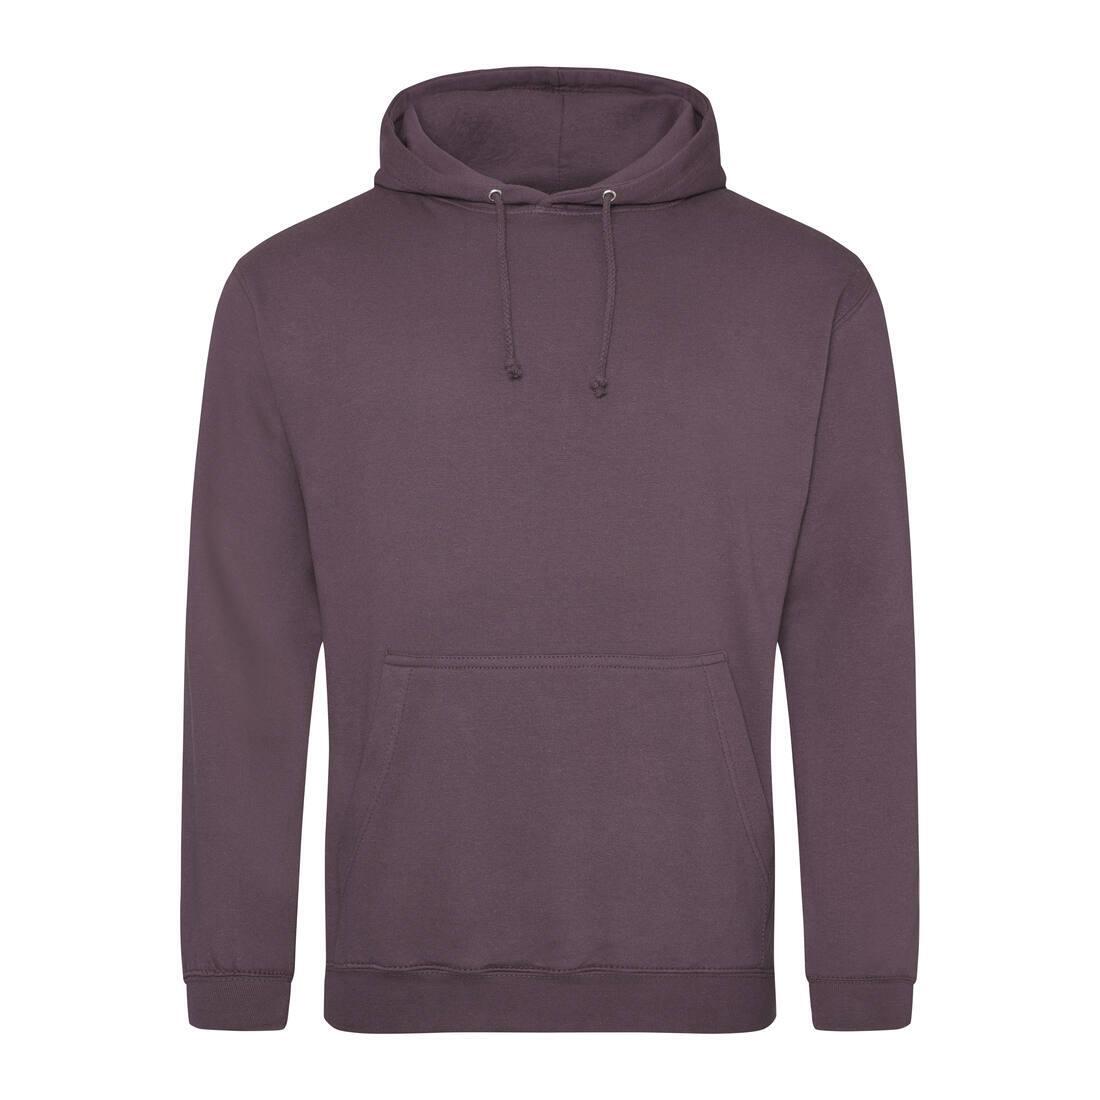 Heren hoodie wild mulberry perfect voor bedrukking van logo, tekst, foto